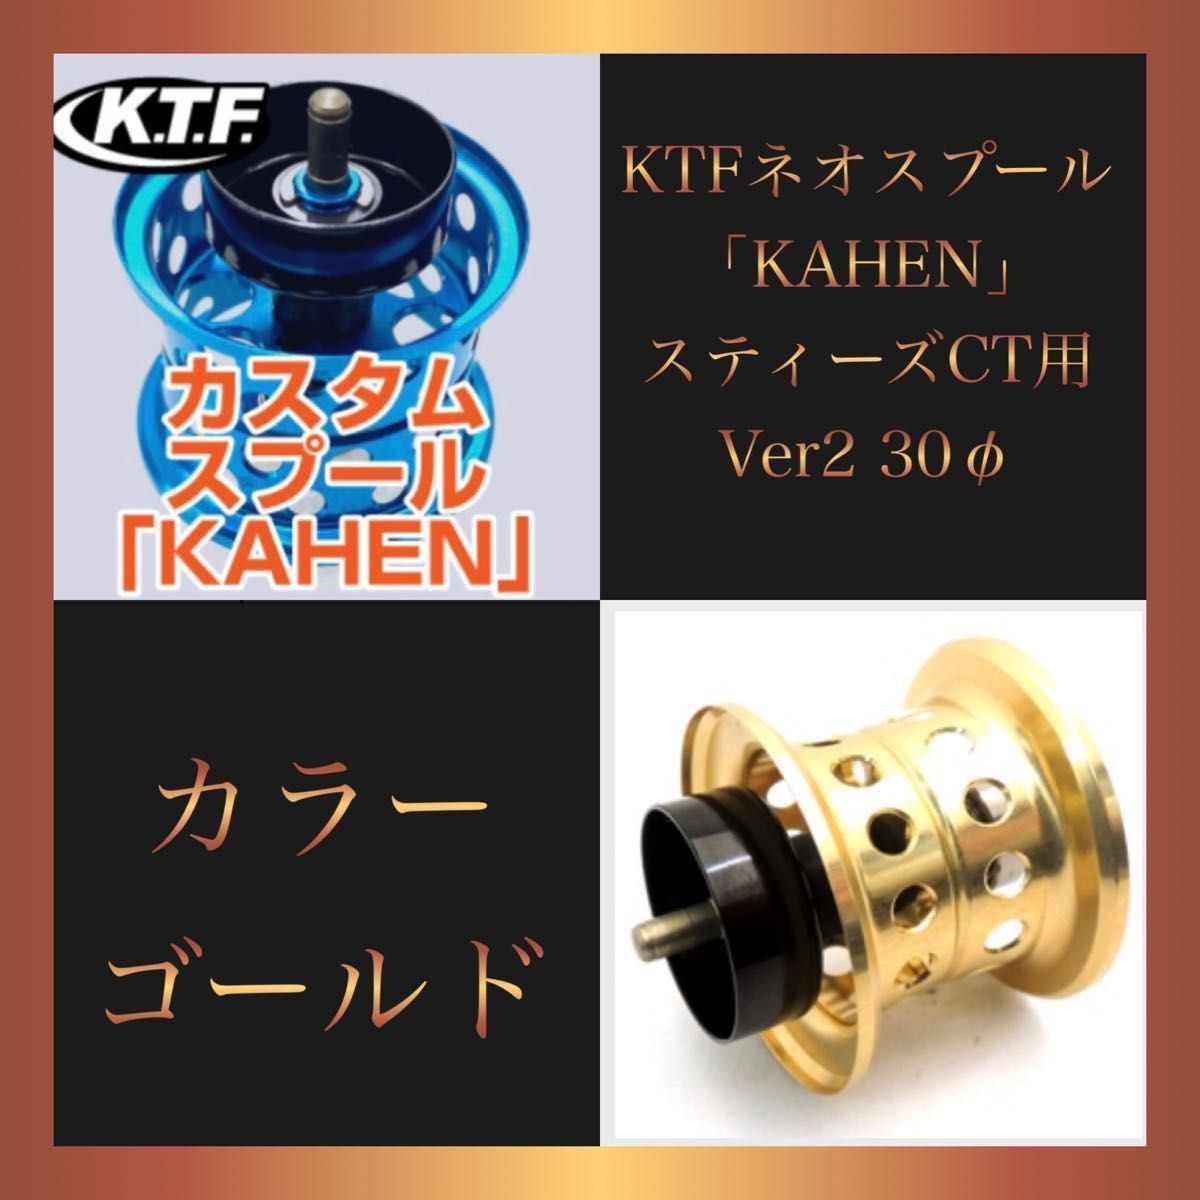 未使用新品 KTF ネオスプール 「KAHEN」 スティーズCT用 Ver2-